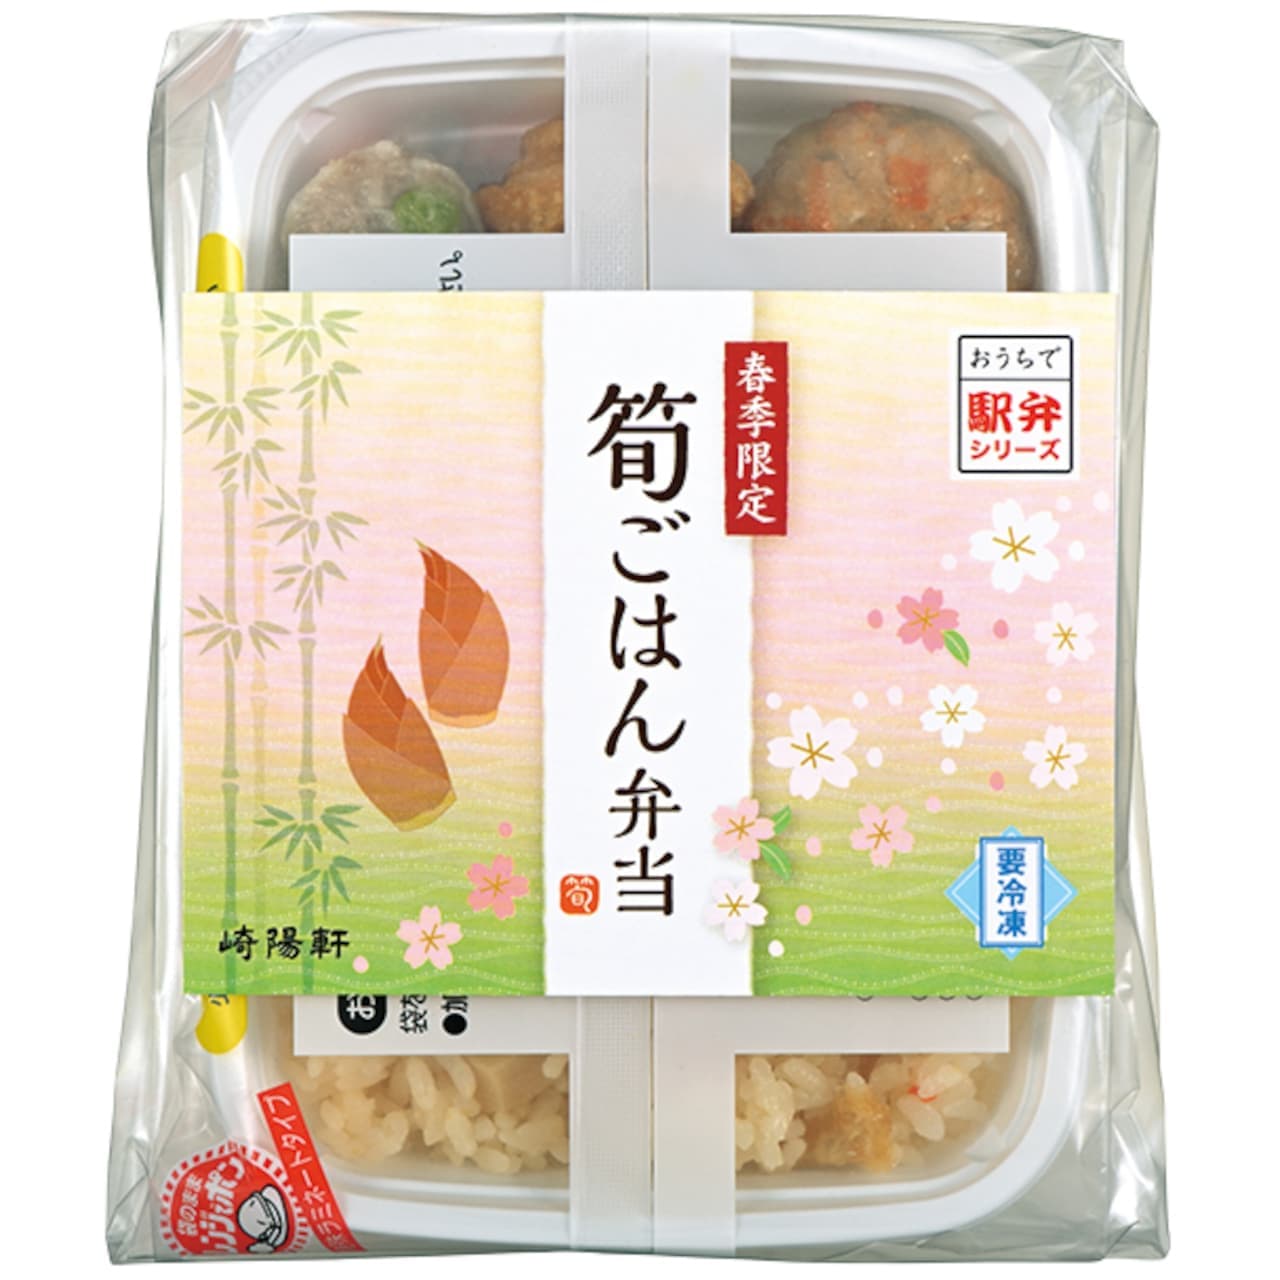 Sakiyo-ken "Ekiben at Home Series Spring Bamboo Shoots Rice Bento" package